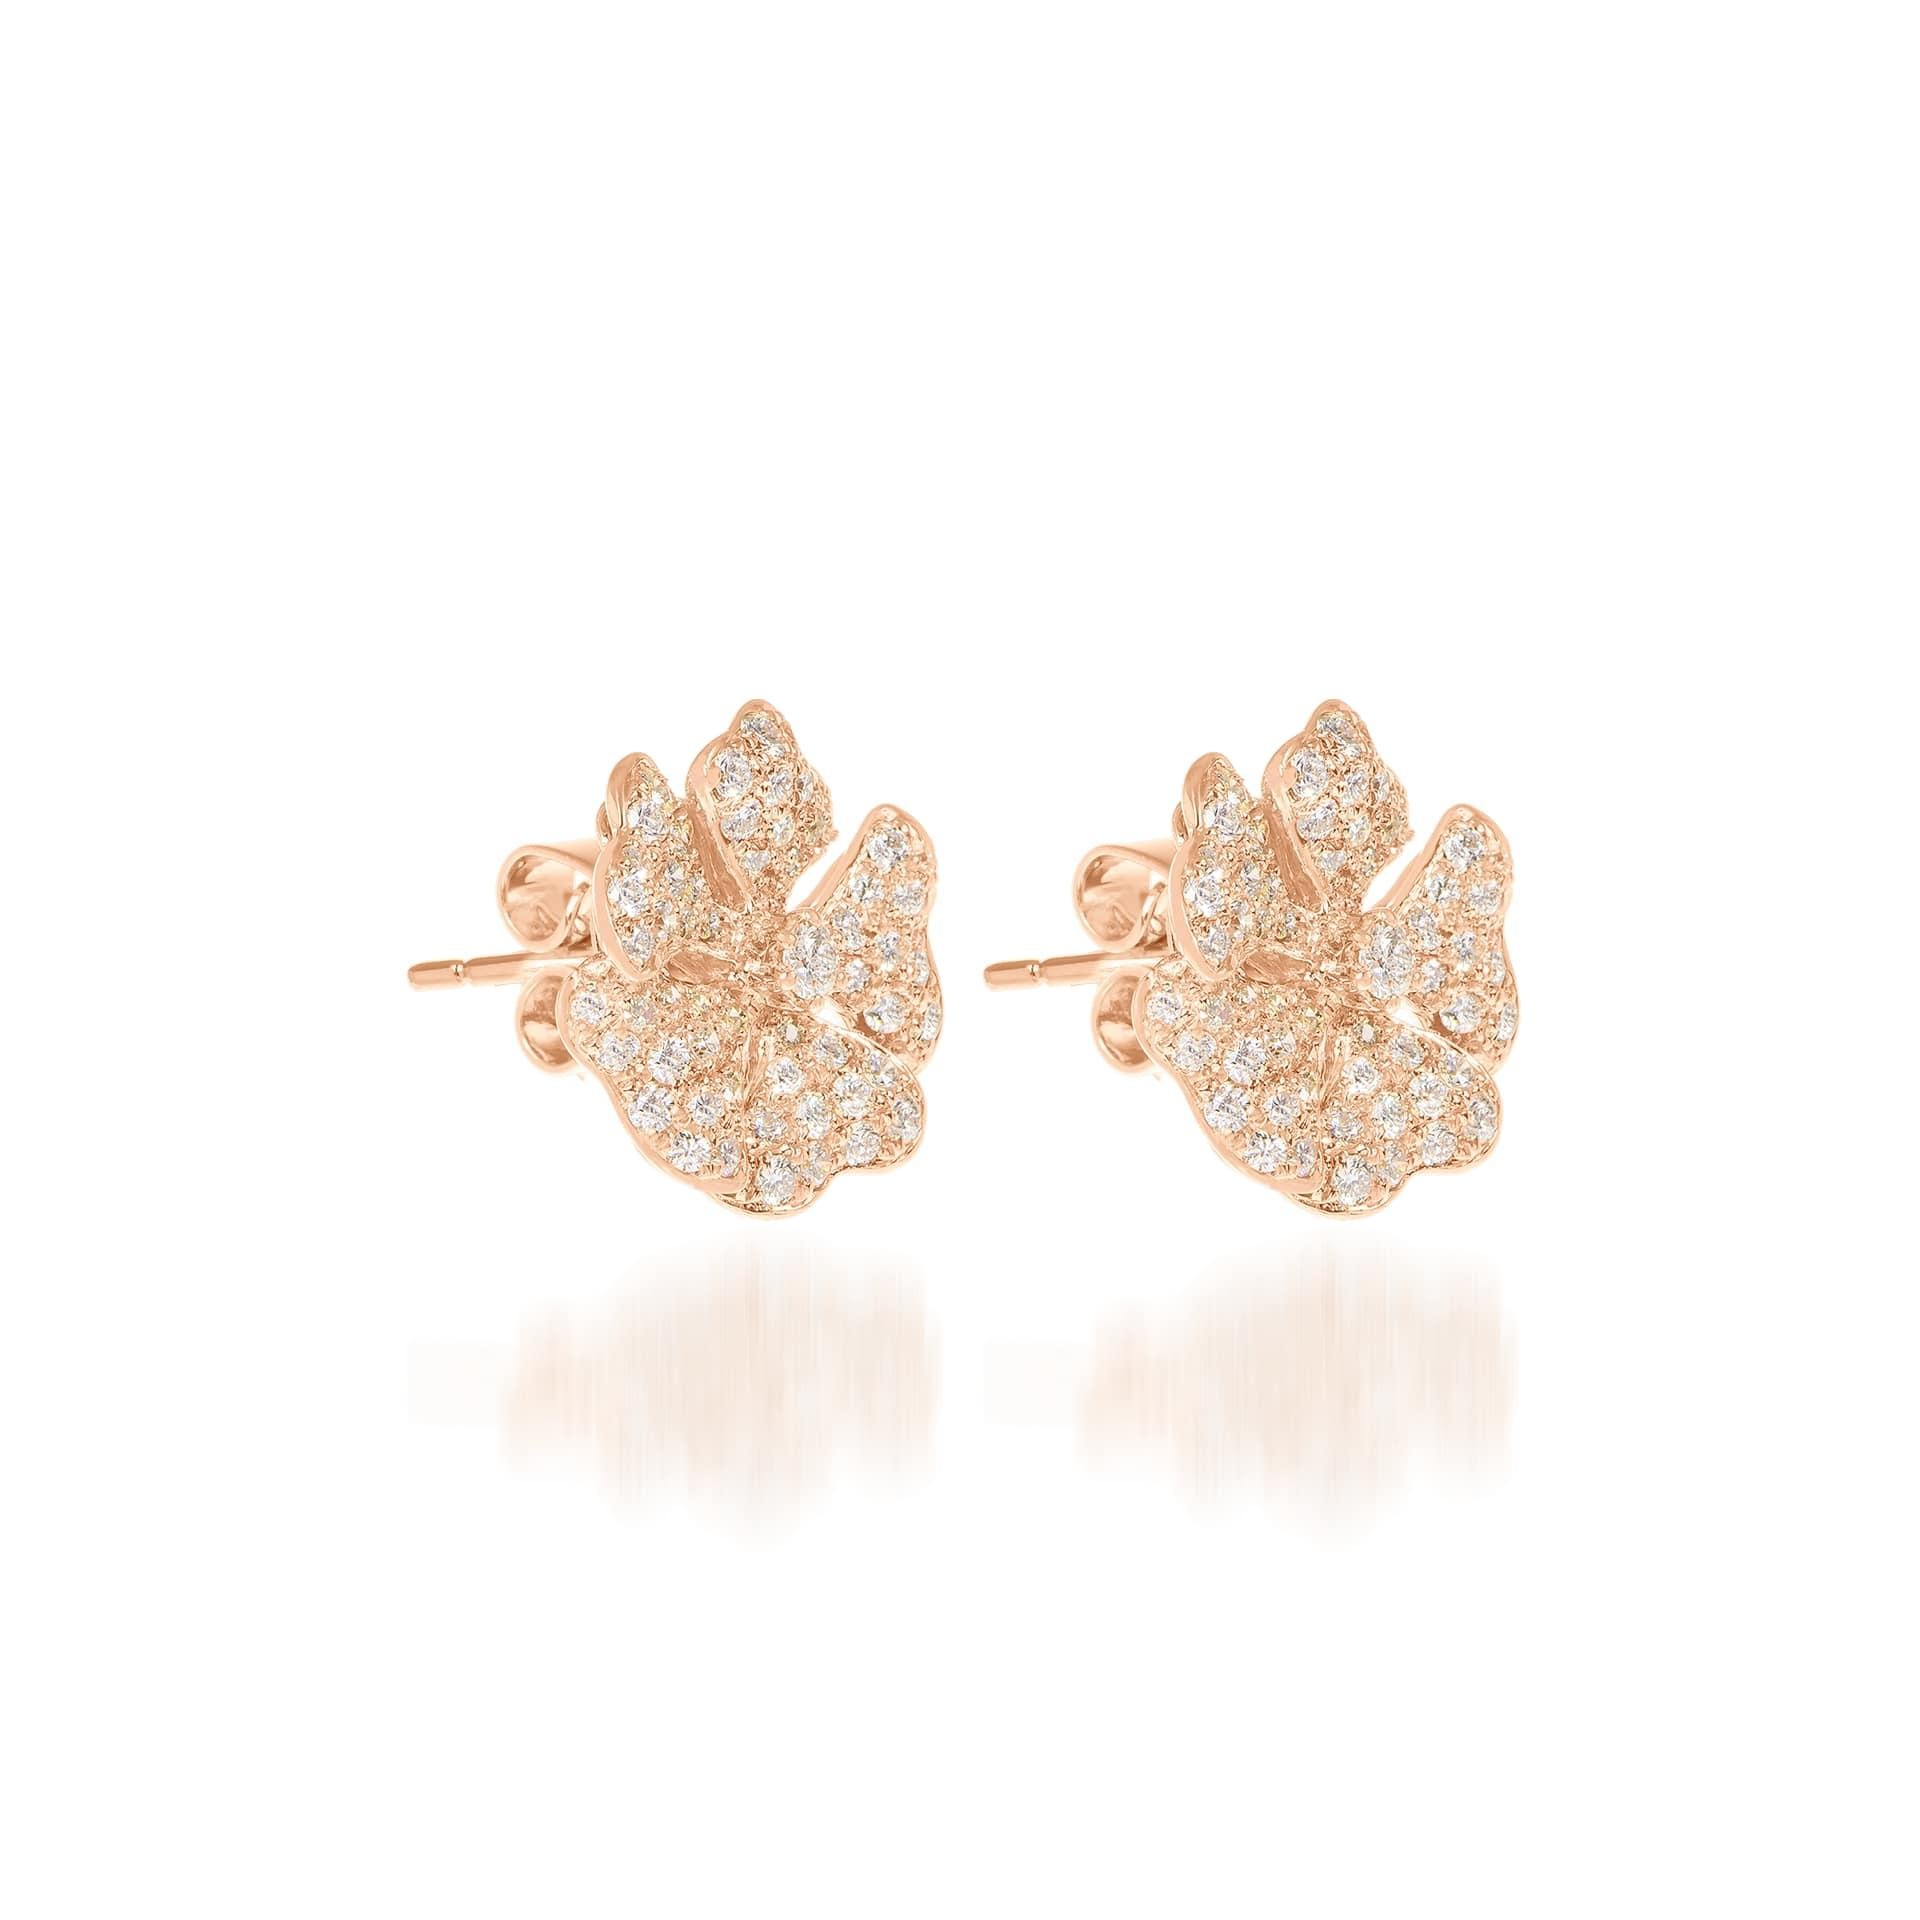 Boucles d'oreilles Bloom en or rose 18 carats avec petits diamants pavés

Inspirée par les pétales exquis de la fleur alpine de quintefeuille, la collection Bloom associe la richesse des diamants et des métaux précieux à la légèreté et à la